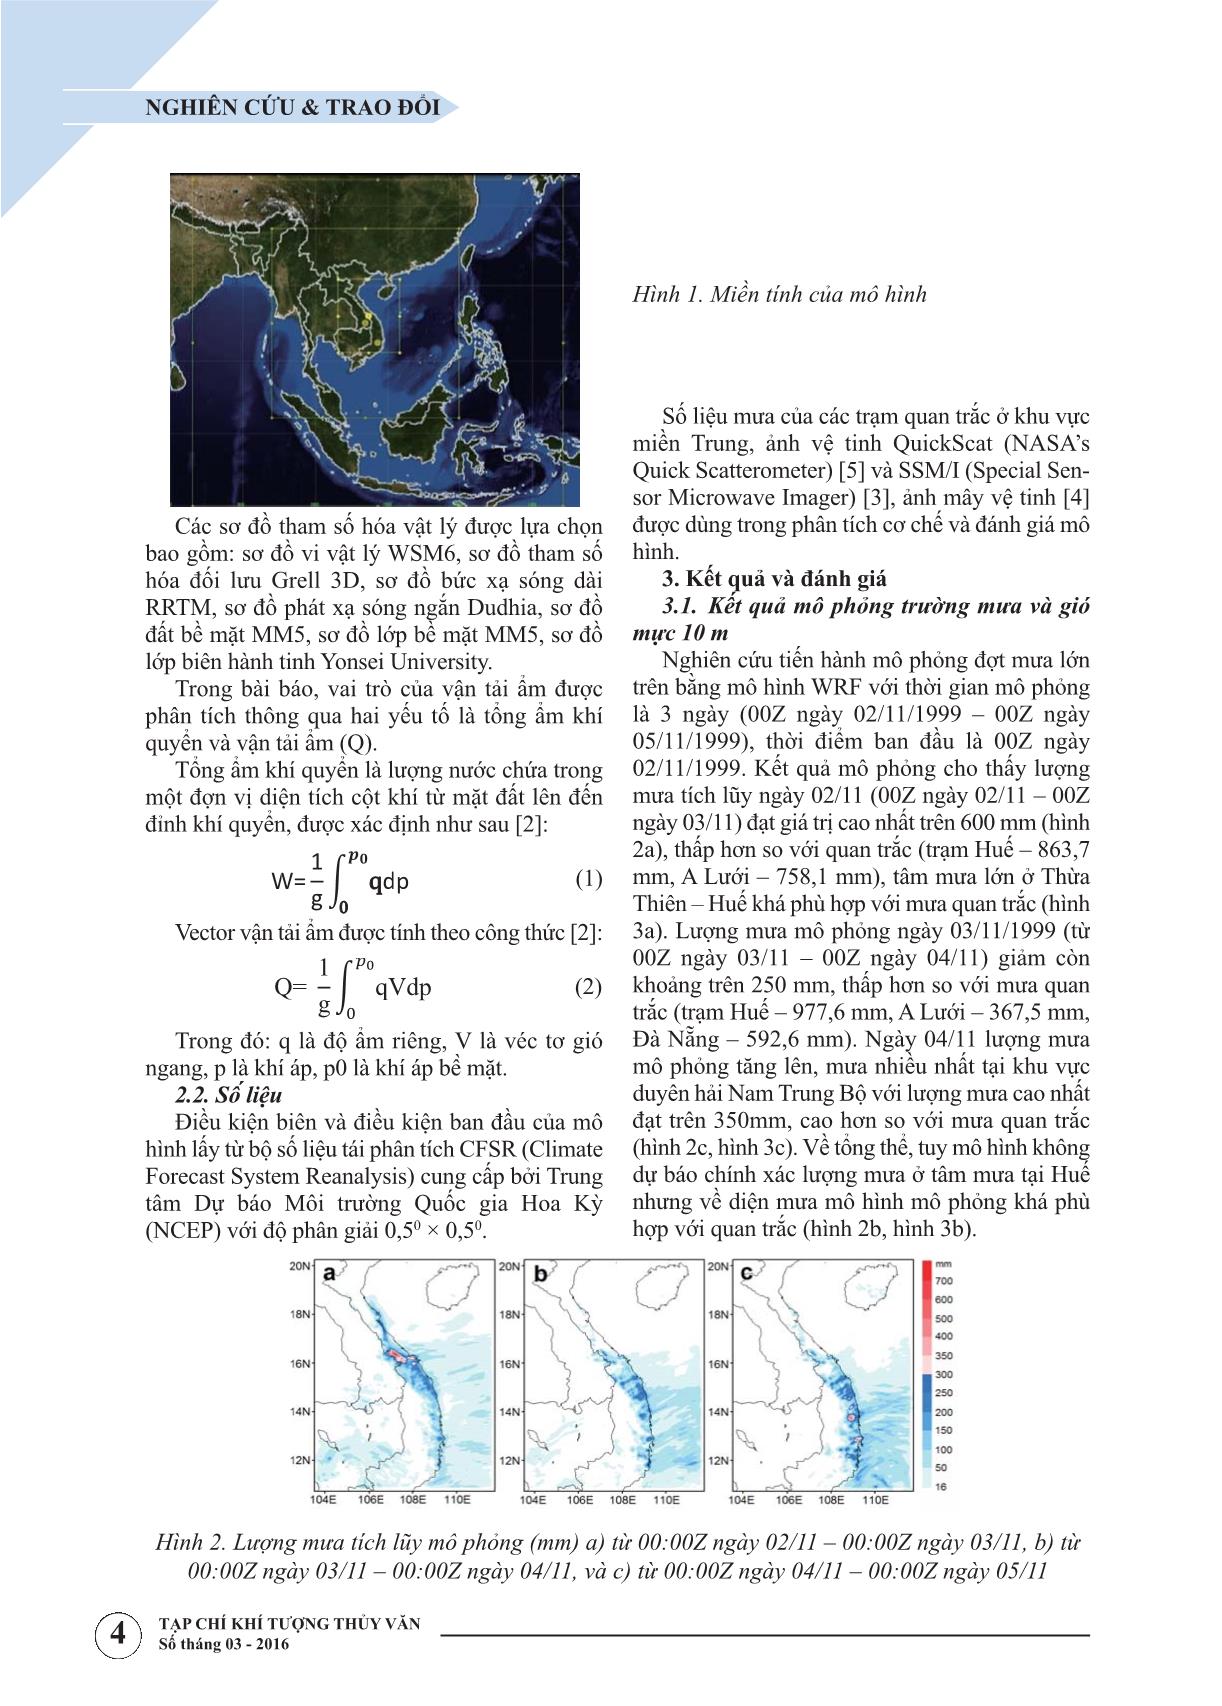 Nghiên cứu vai trò của vận tải ẩm trọng đợt mưa lớn tháng 11 năm 1999 ở miền Trung bằng mô hình WRF trang 2